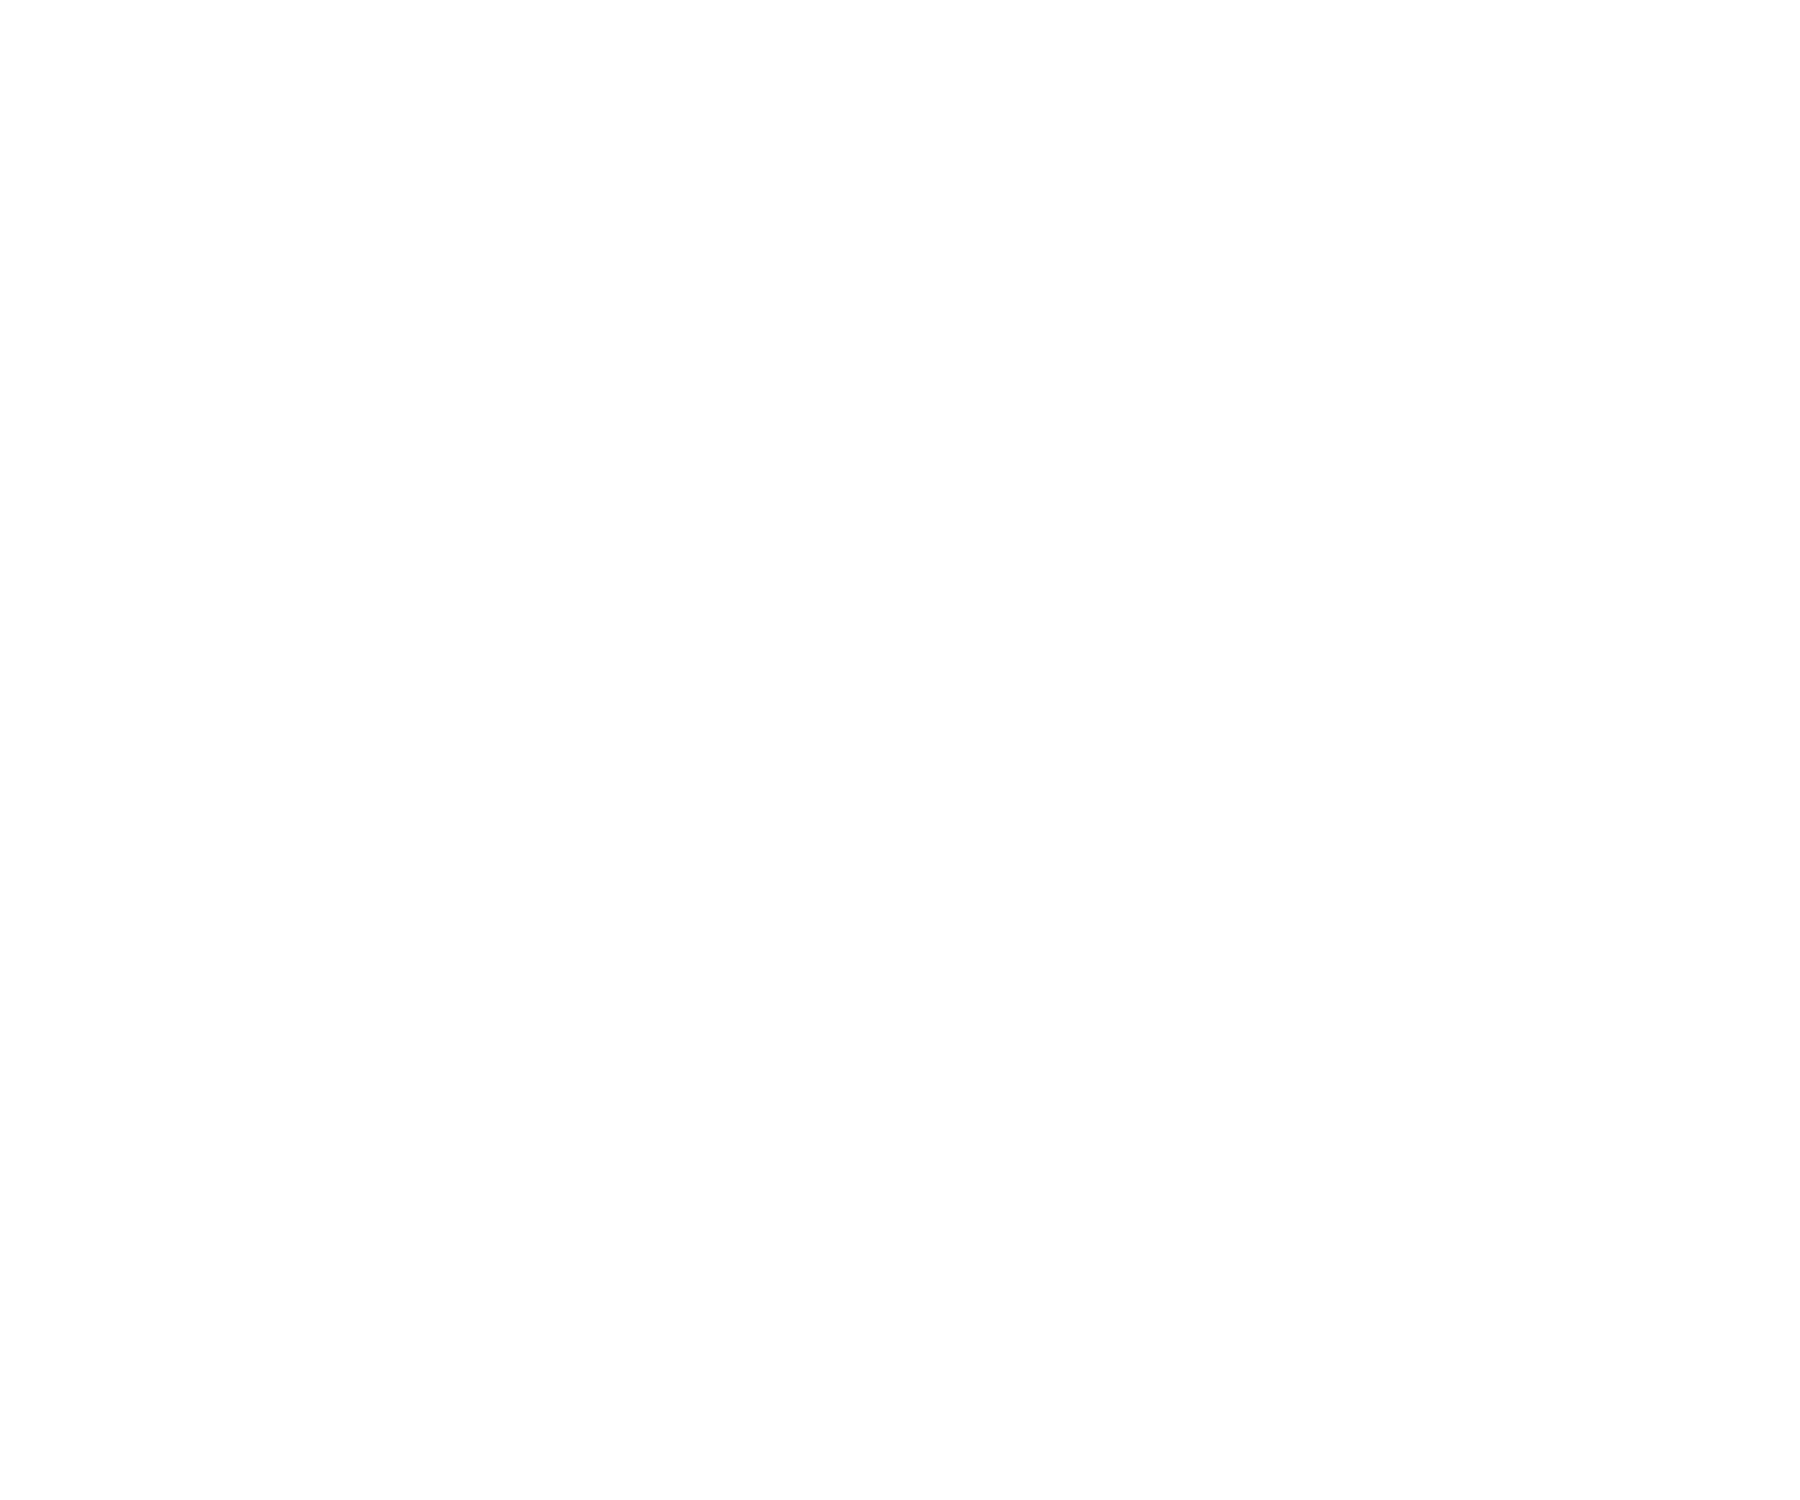 Al-Qasim Academy